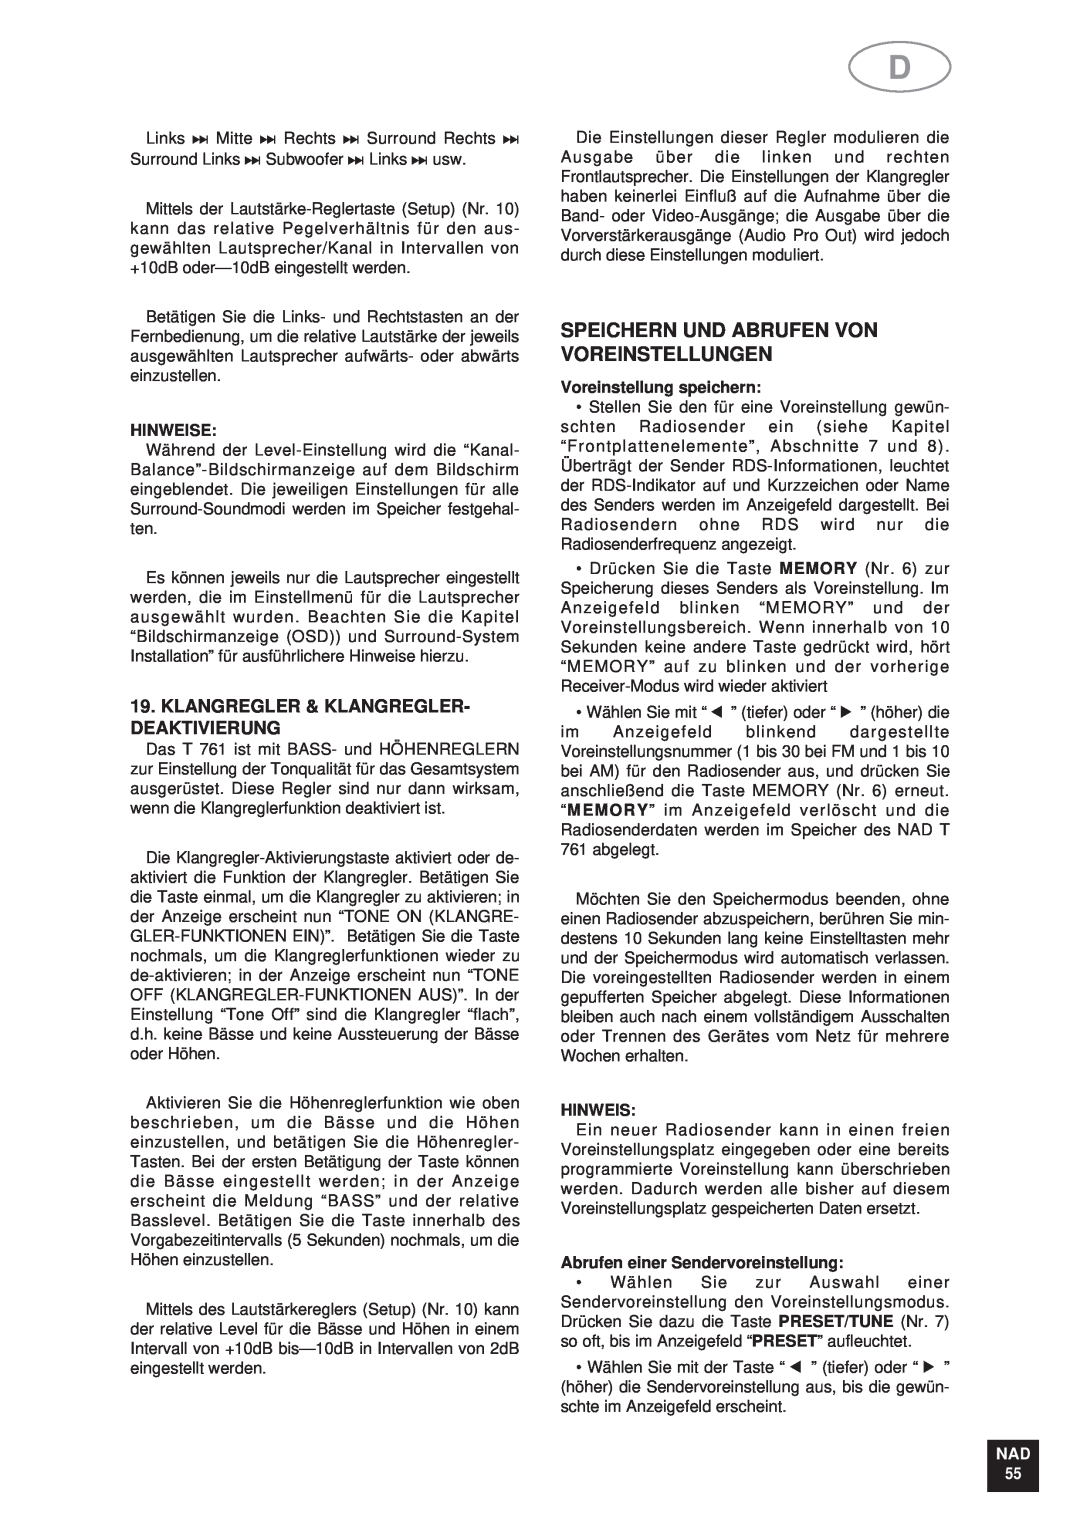 NAD T761 manual Speichern Und Abrufen Von Voreinstellungen, Klangregler & Klangregler- Deaktivierung, Hinweise, Nad 